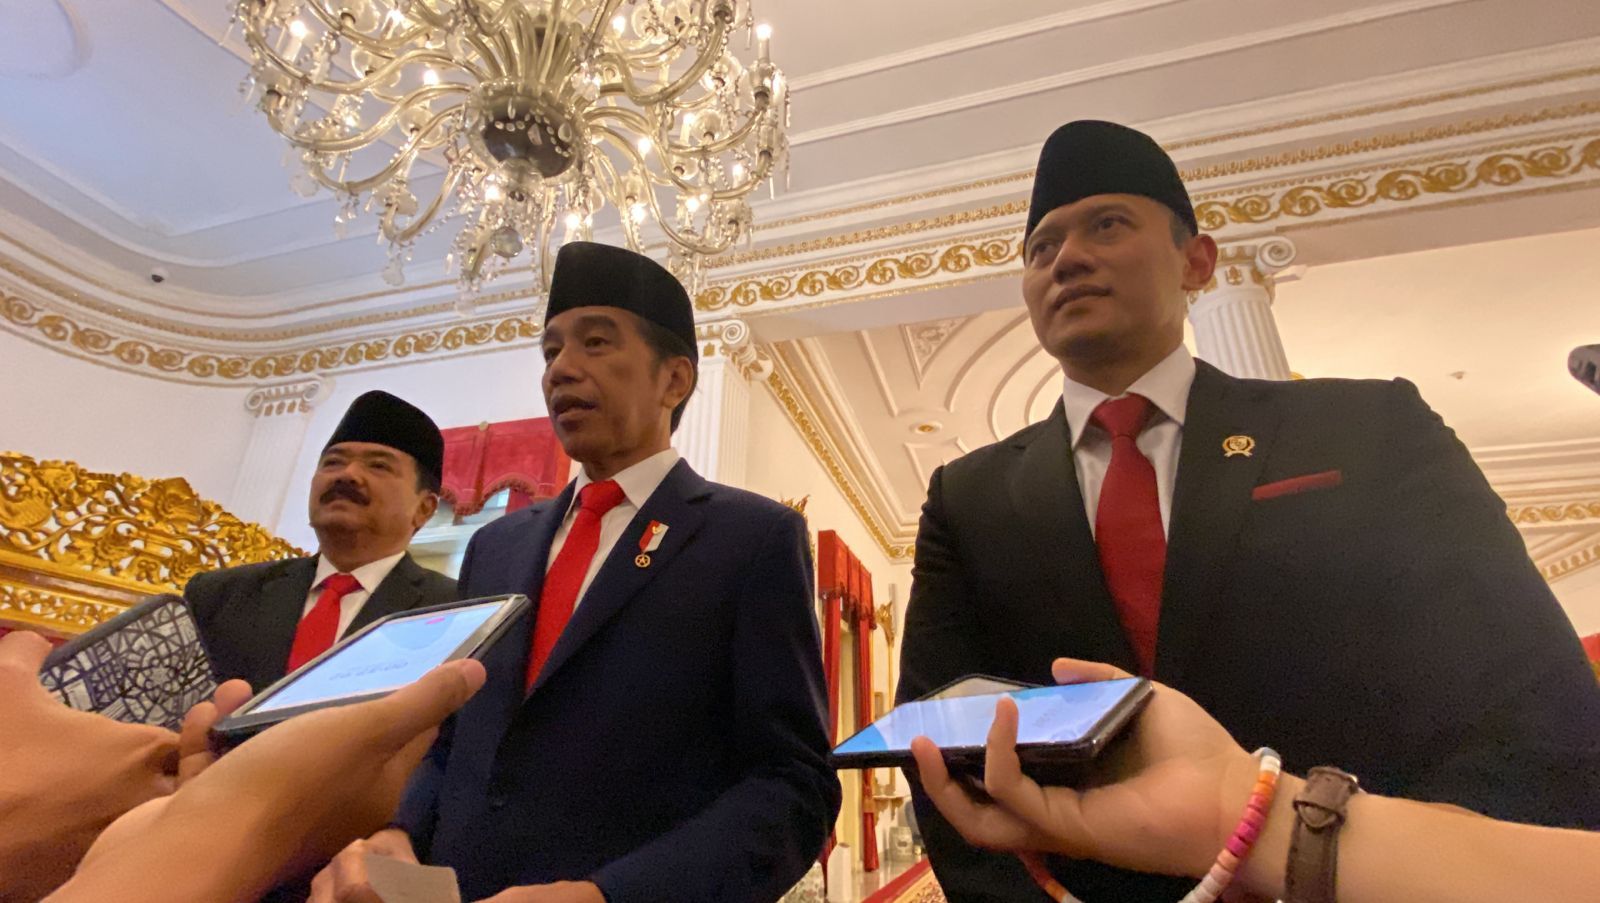 Demokrat Masuk Kabinet, Jokowi Dinilai Lepas dari Bayang-bayang PDI-P